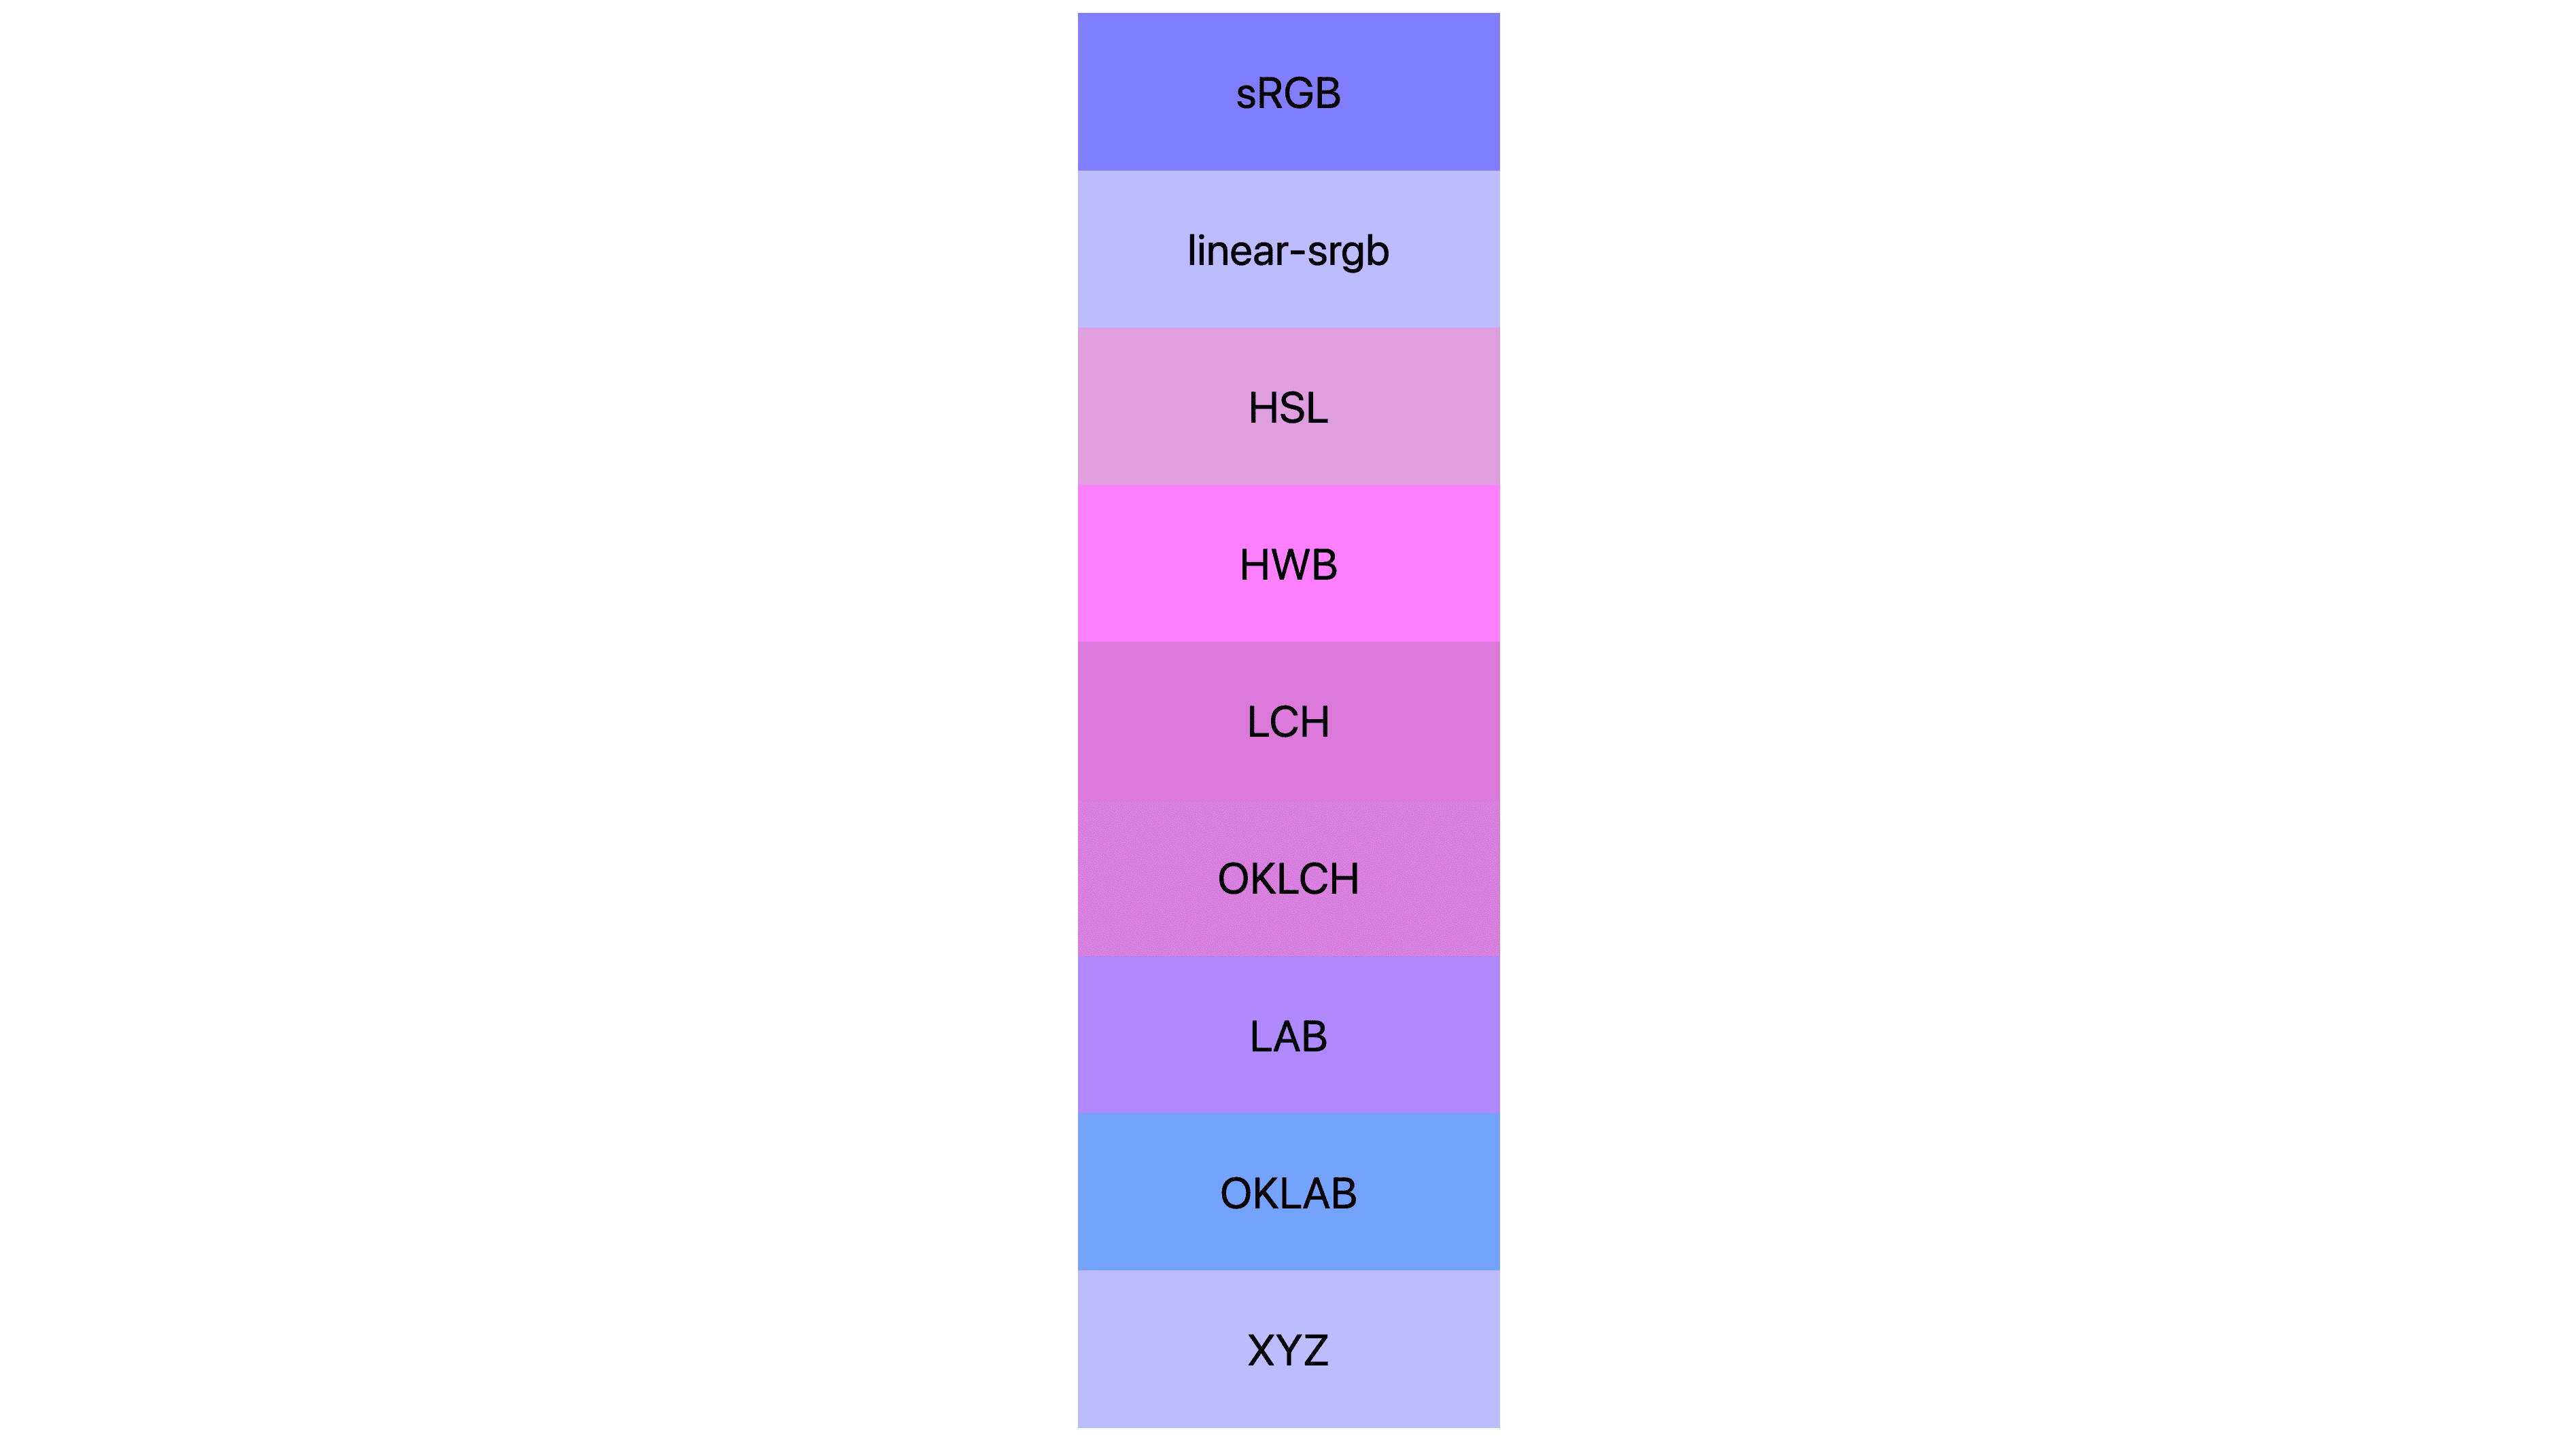 Sete espaços de cor (srgb, linear-srgb, lch, oklch, lab, oklab, xyz), cada um com resultados diferentes. Muitos são rosa ou roxo, alguns ainda são azuis.